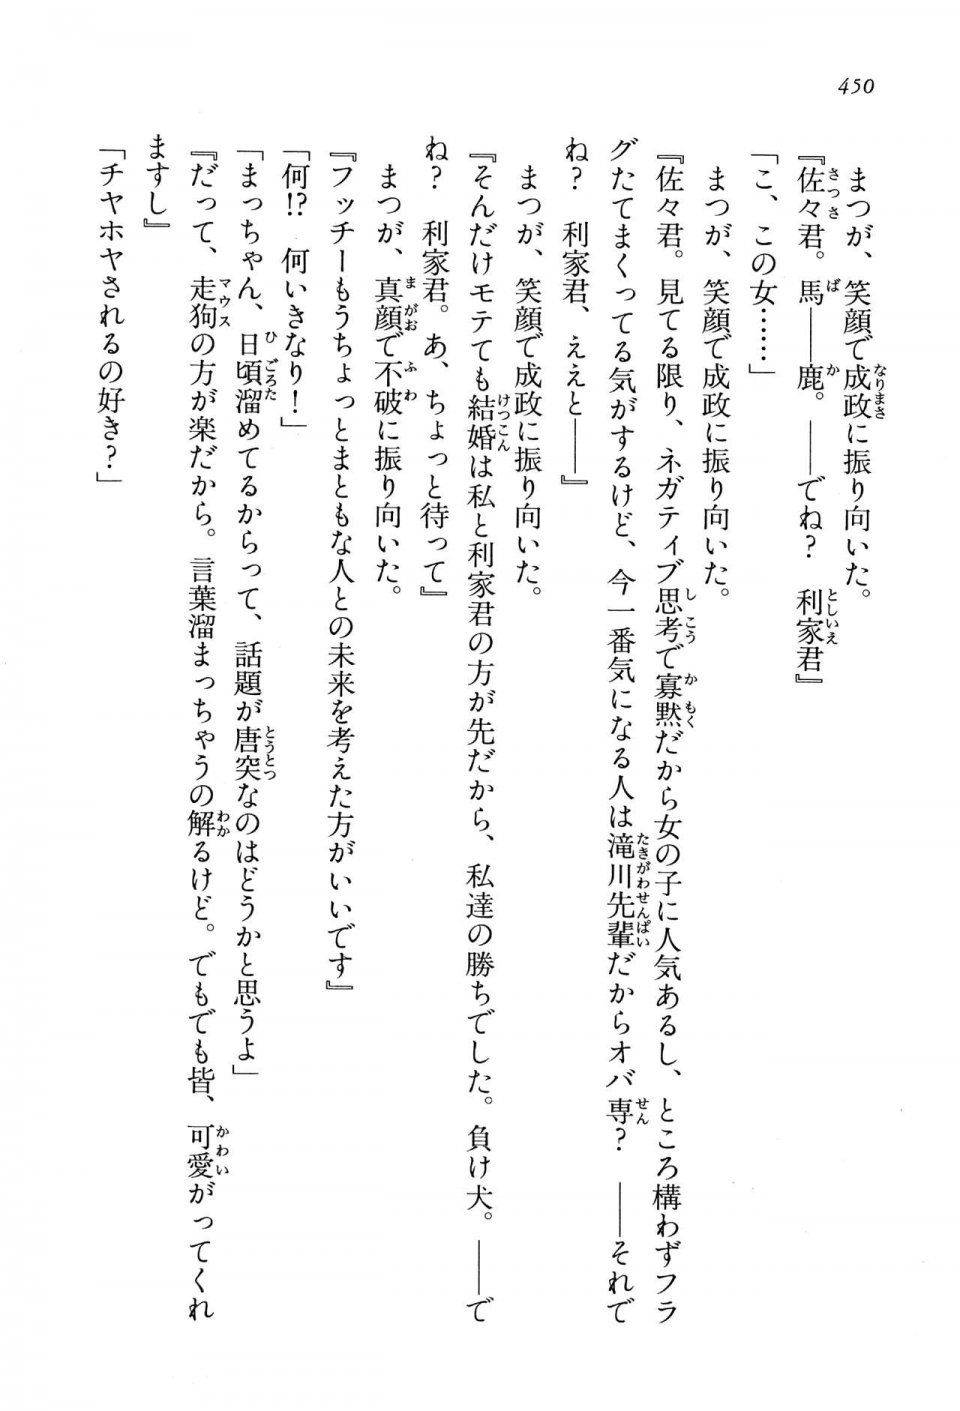 Kyoukai Senjou no Horizon LN Vol 13(6A) - Photo #450